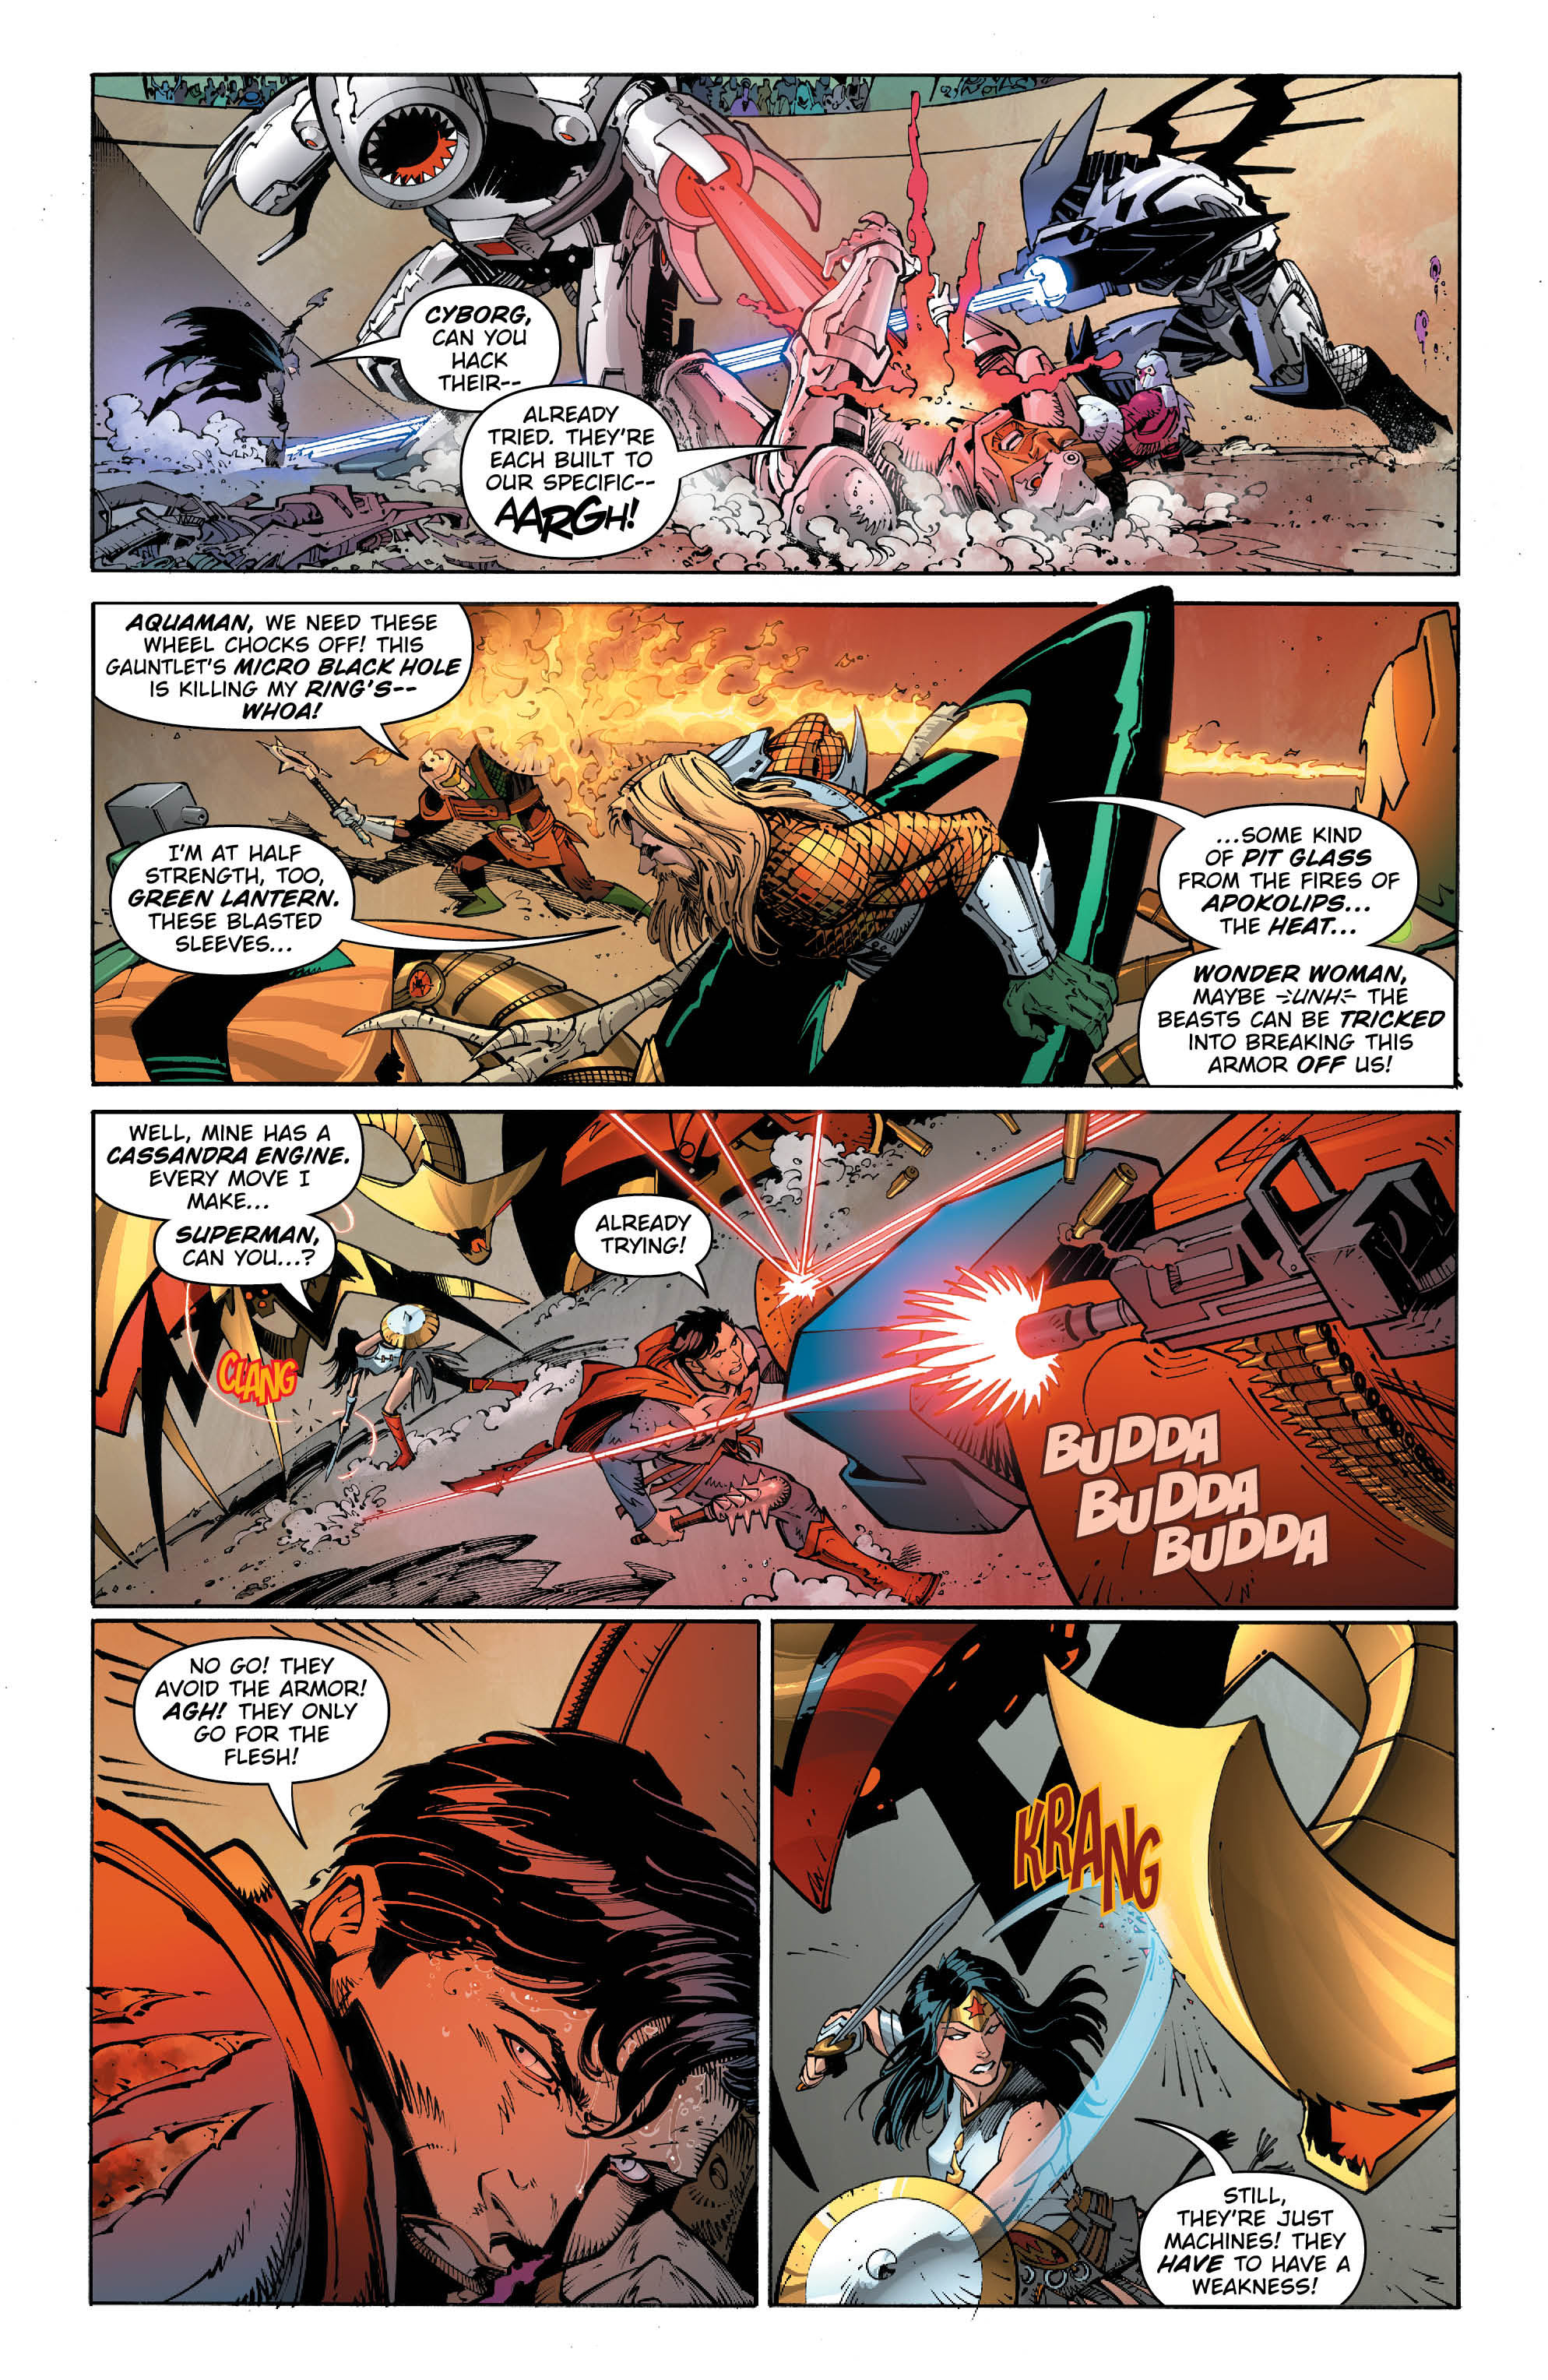 Metal Page 5 - DC Comics News